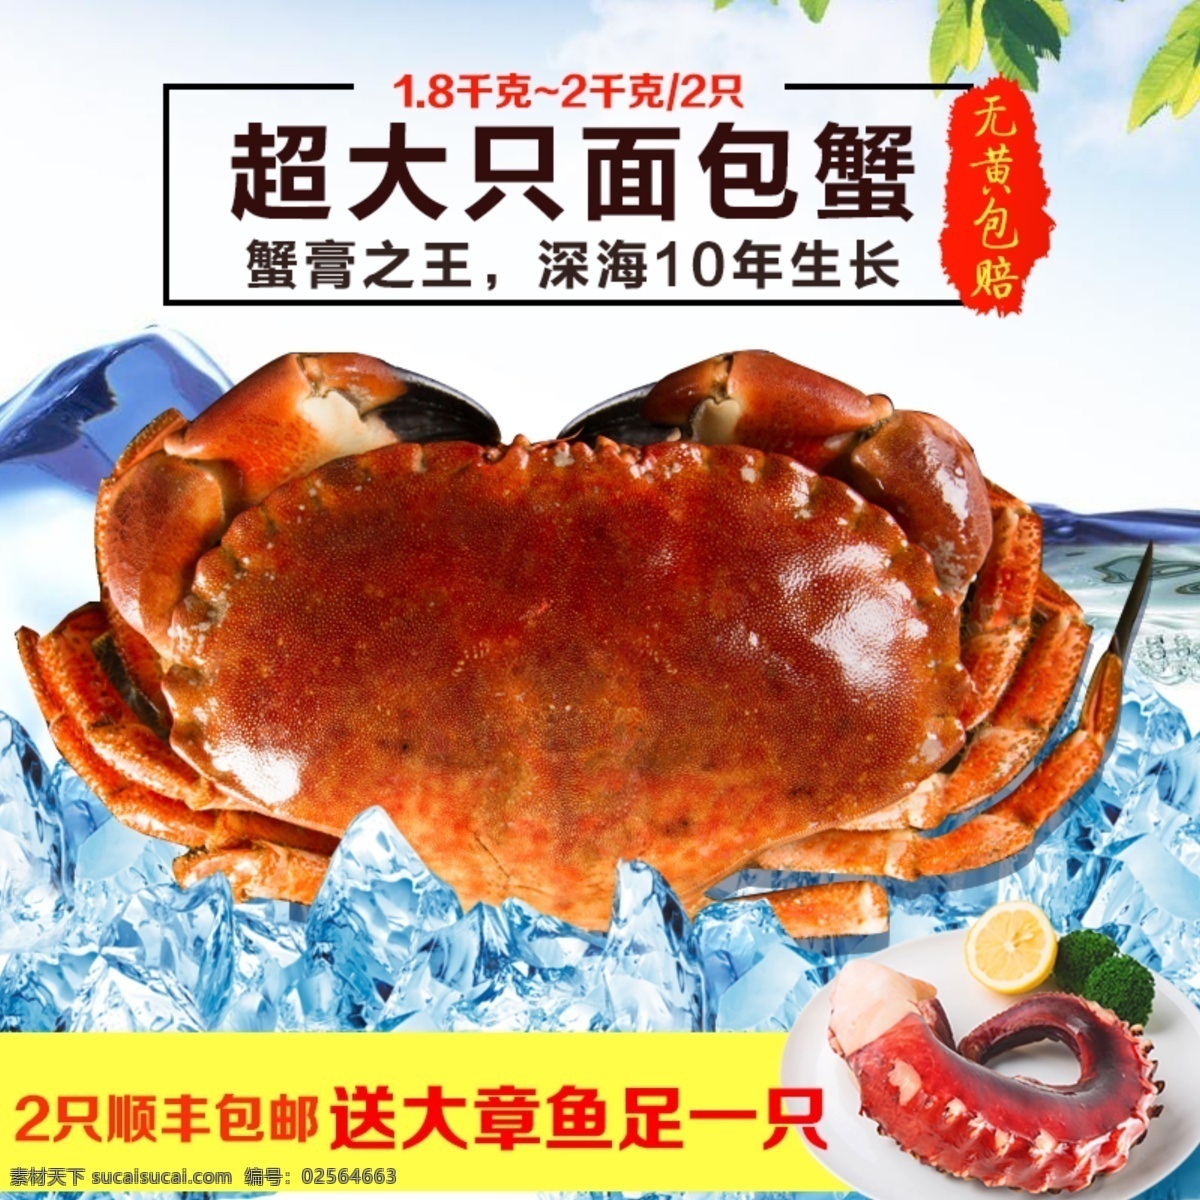 超大只面包蟹 高清面包蟹 蟹 餐饮美食 传统美食 海鲜 生物世界 鱼类 海鲜素材 面包蟹 高清 海洋生物 分层